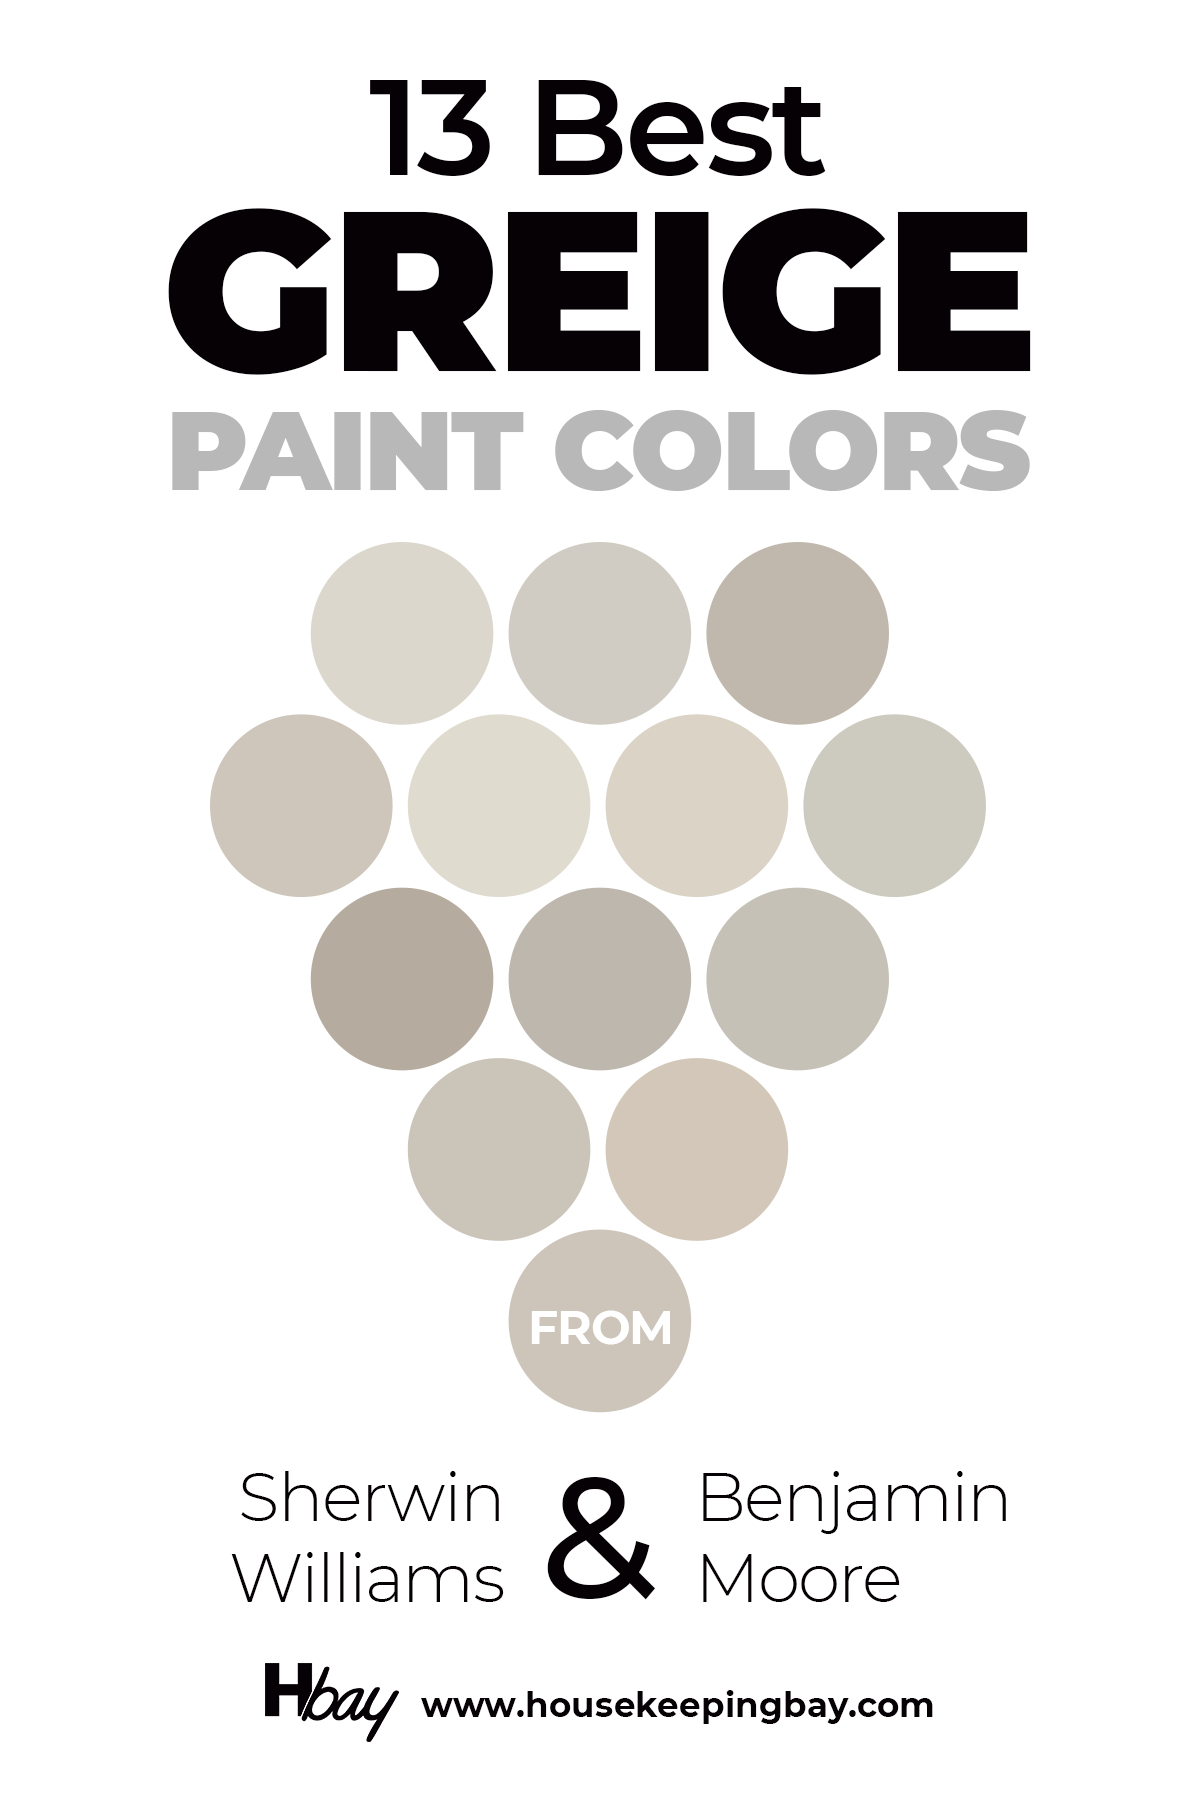 13 Best Greige paint colors